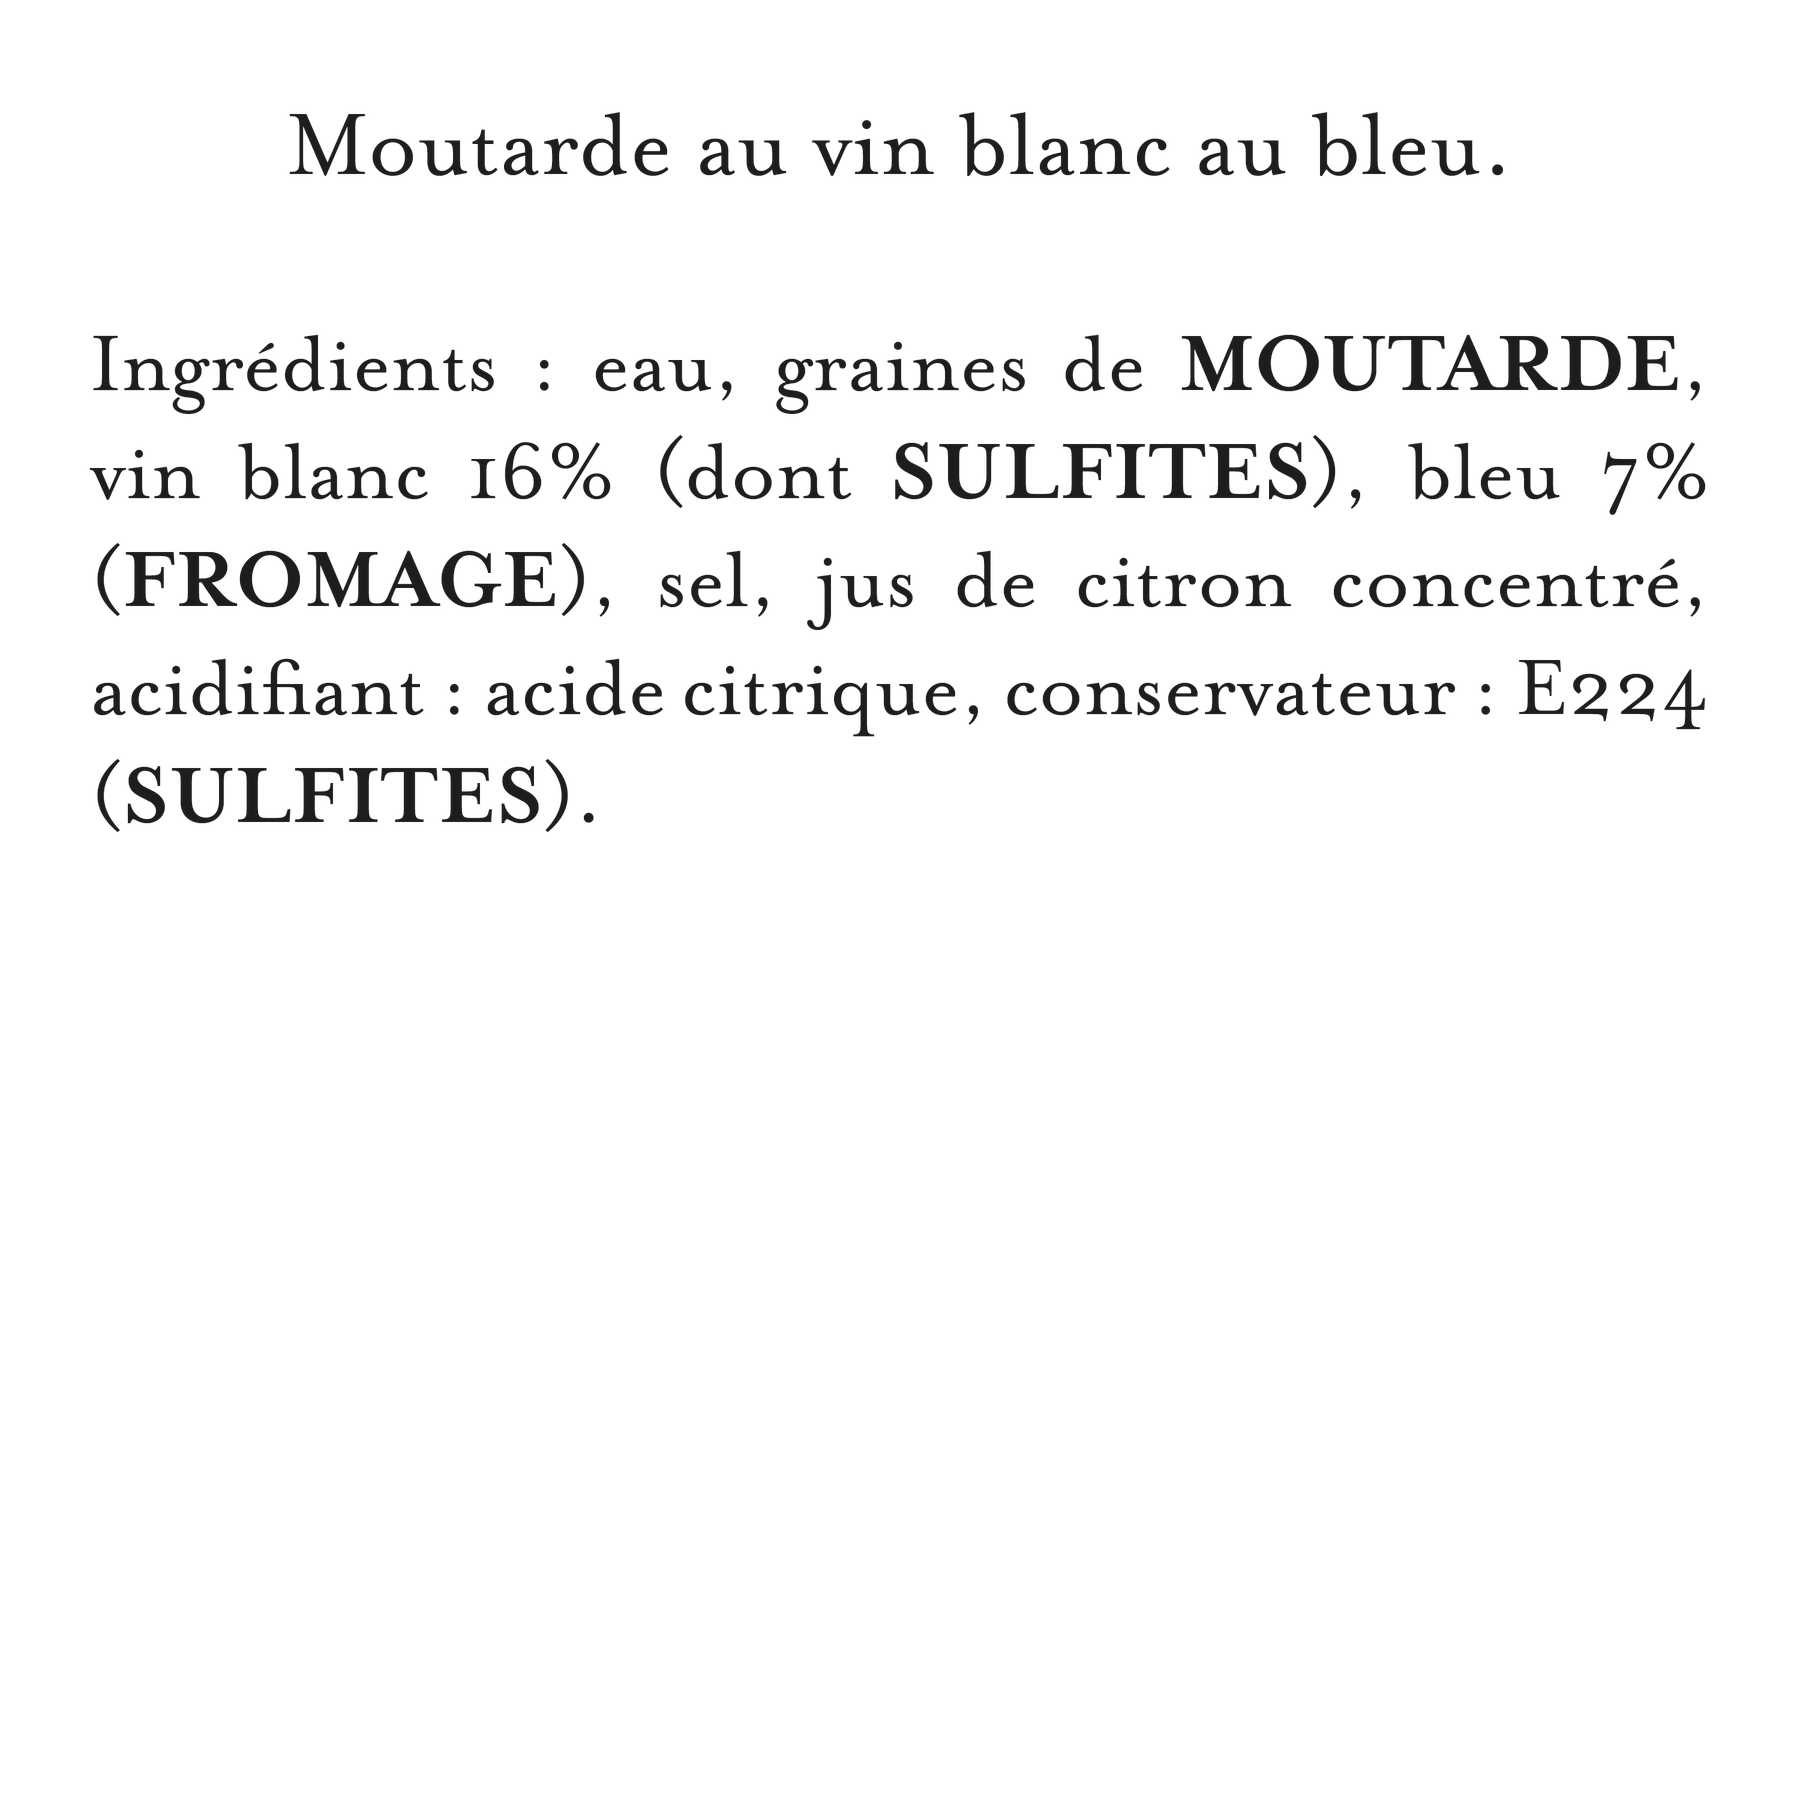 Maille - Moutarde au vin blanc, bleu, 108 g, liste d'ingrédients